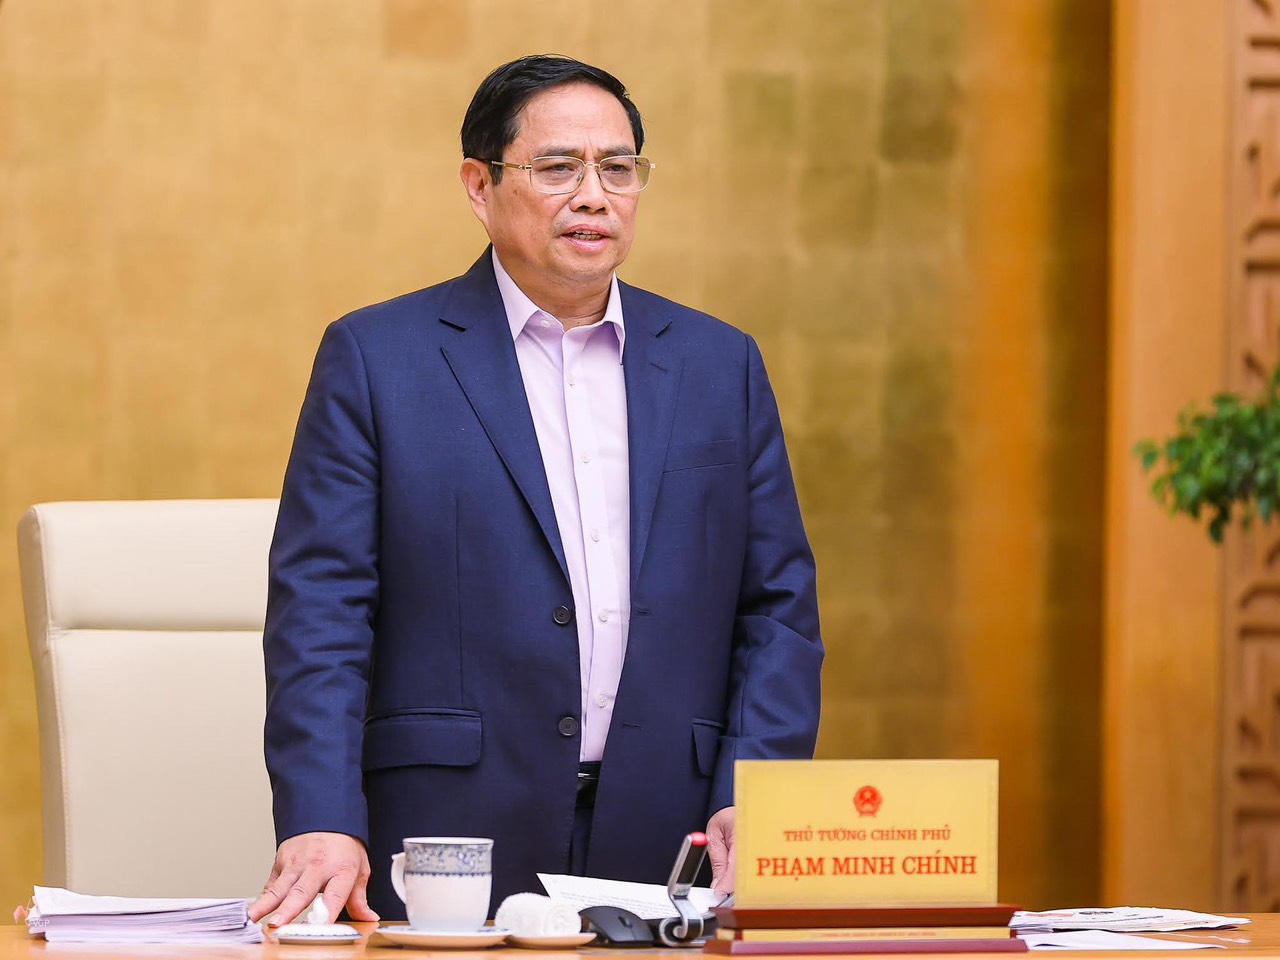 Thủ tướng Chính phủ Phạm Minh Chính chỉ đạo quyết liệt về vấn đề các cơ quan không được yêu cầu người dân đi xin xác nhận cư trú tại phiên họp thường kỳ của Chính phủ